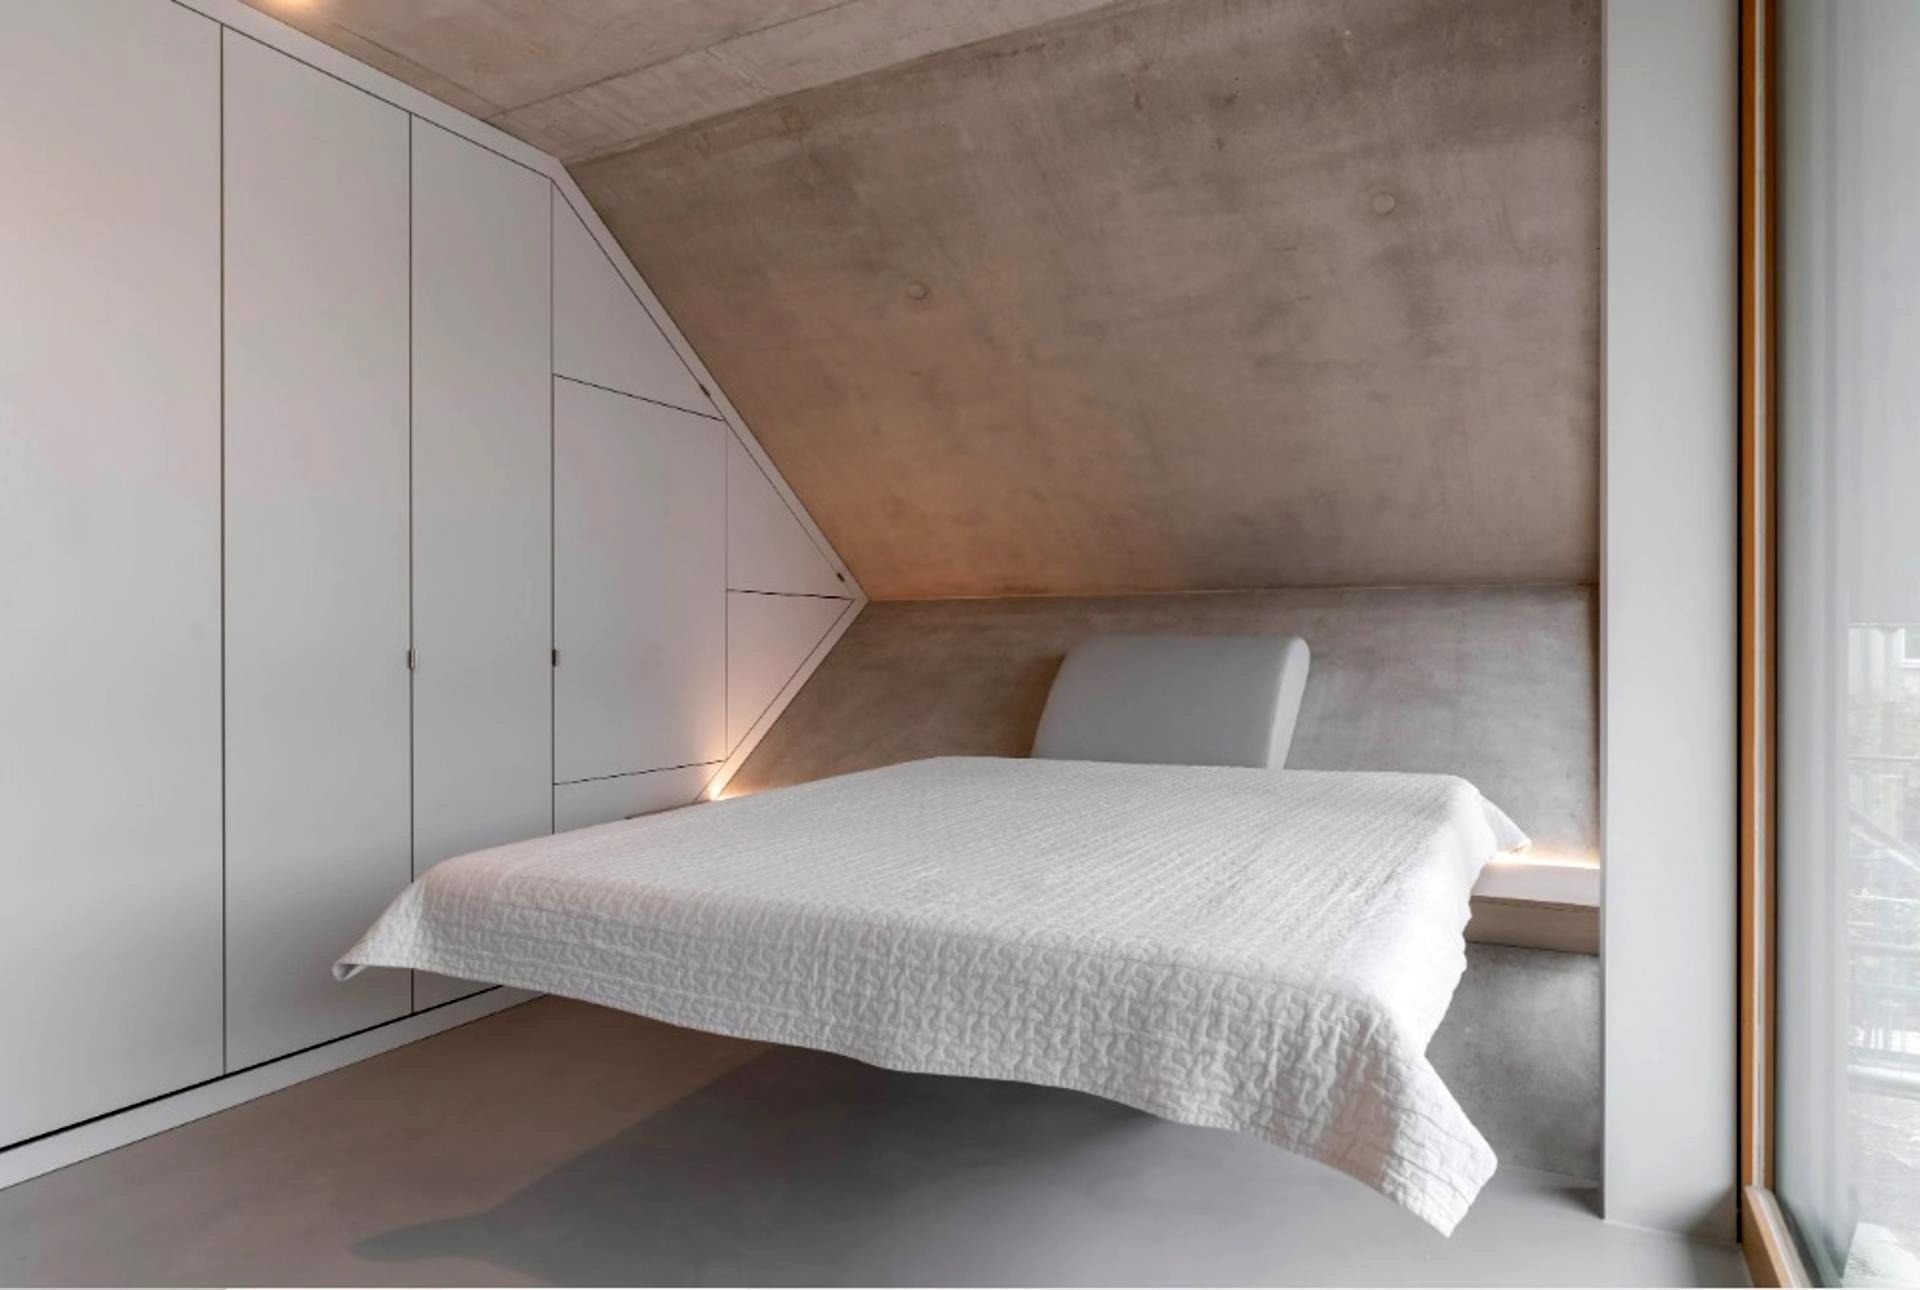 نگاه متفاوت معمار آلمانی برای افزایش جذابیت آپارتمان نشینی (خبرفوری)